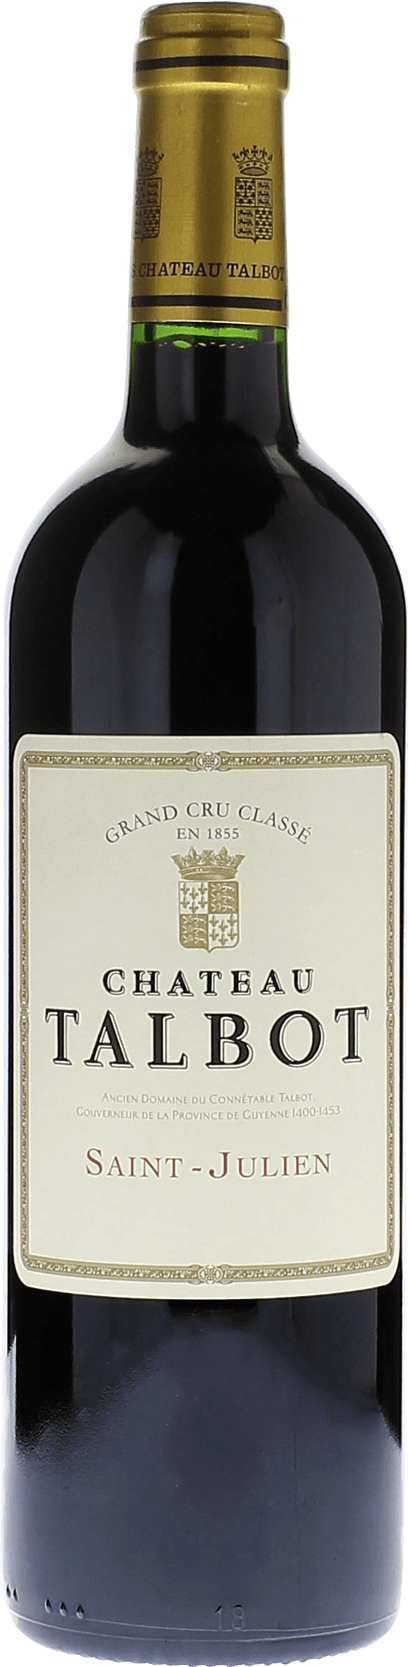 Talbot 1970 4me Grand cru class Saint-Julien, Bordeaux rouge